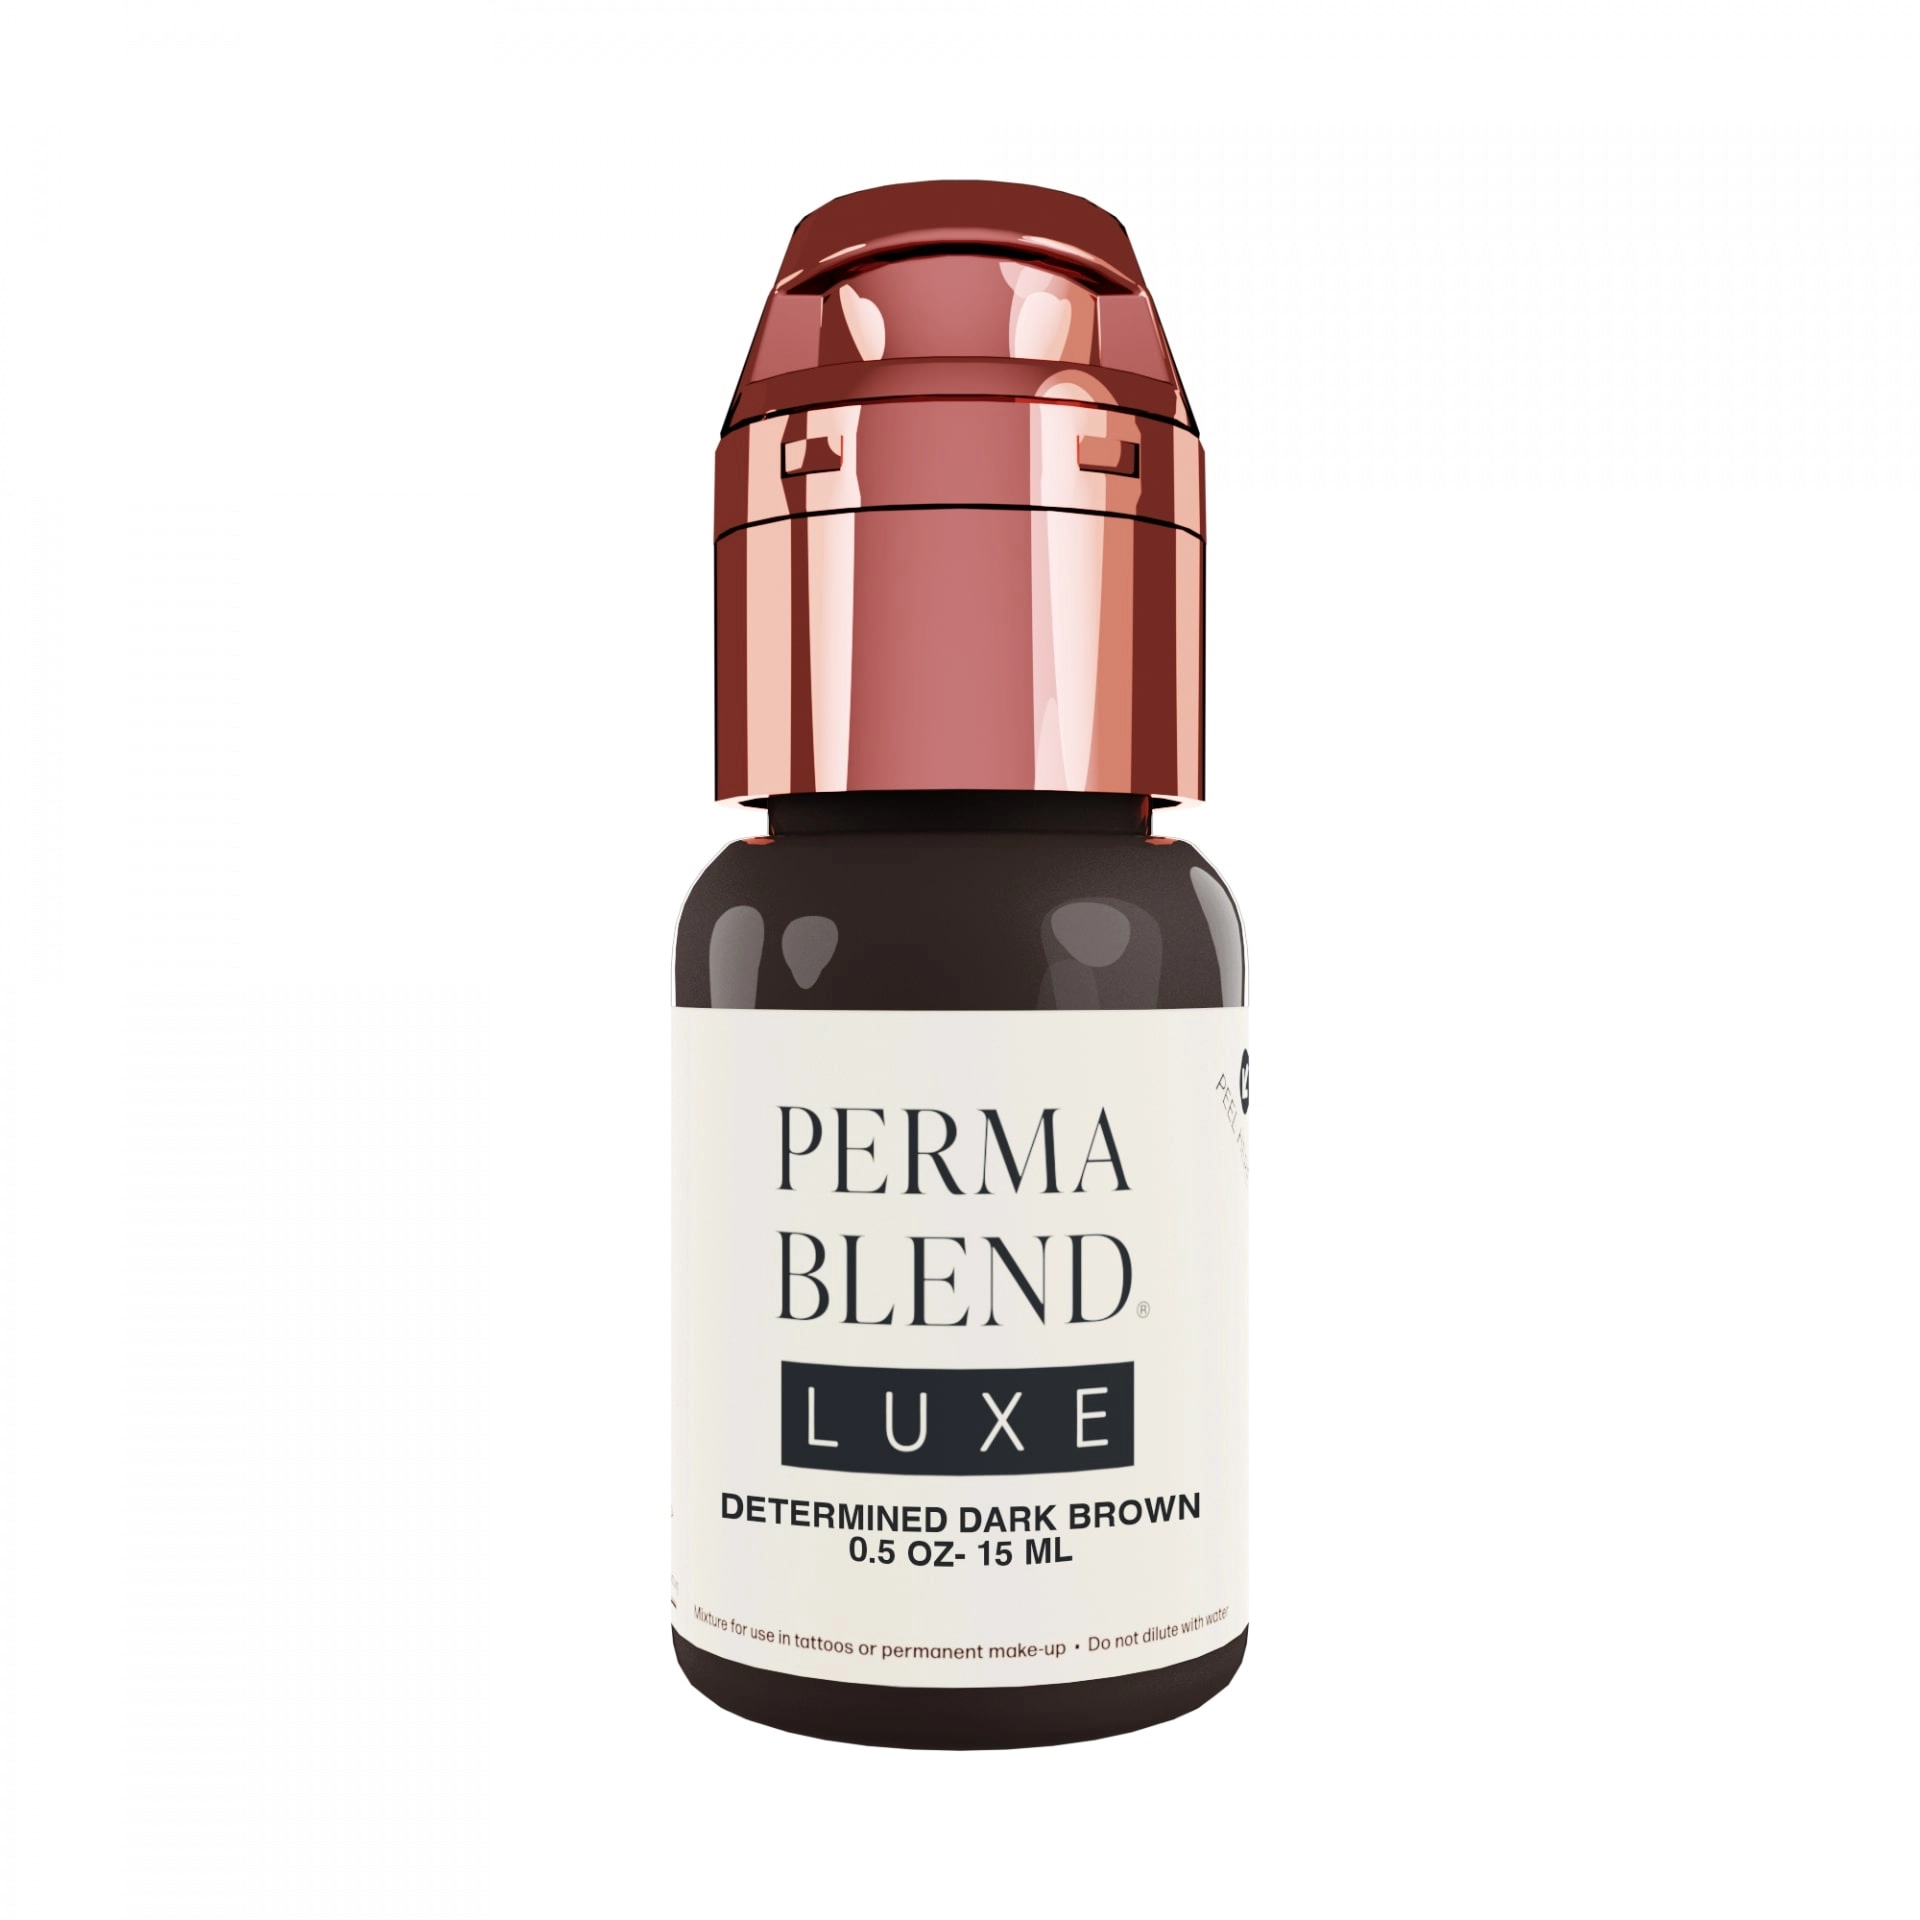 PermaBlend Luxe 15ml - Determined Dark Brown